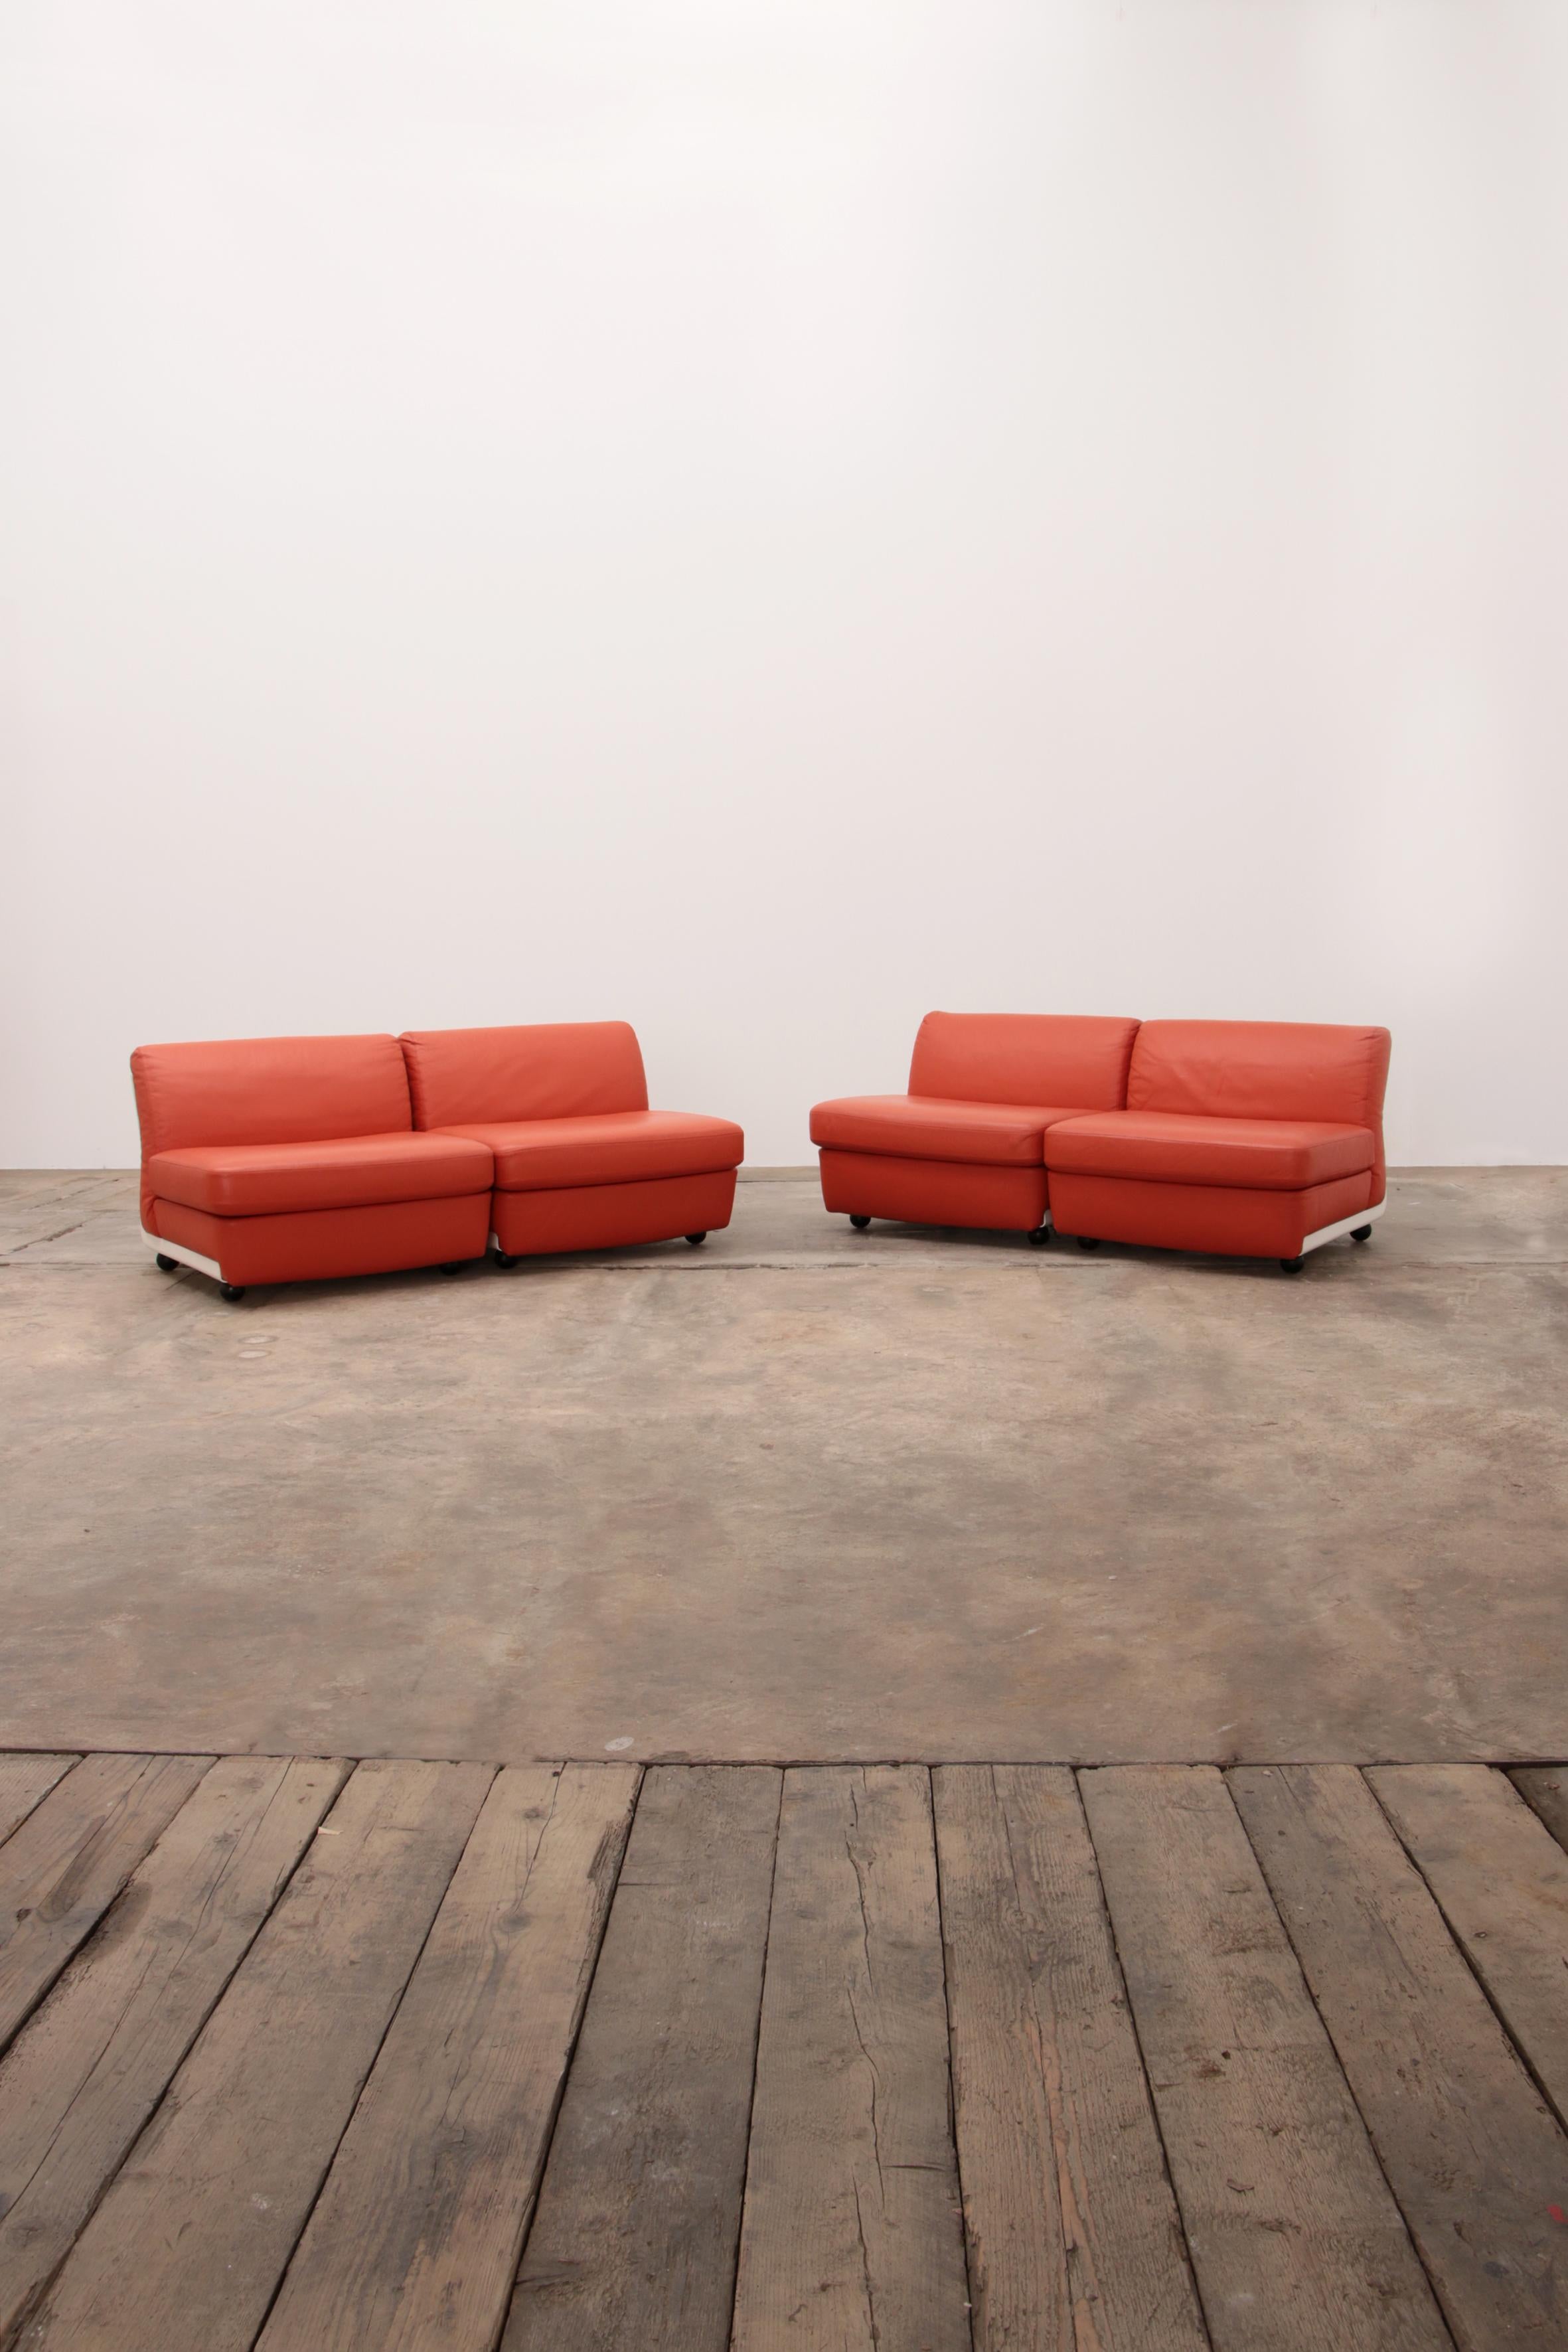 Canapé modulaire Mario Bellini Amanta en cuir orange pour C.C.I.C. Italie, années 1960.

Quatre éléments distincts peuvent être utilisés comme chaises longues ou canapé.

Les coques sont en fibre de verre blanche et les sièges sont recouverts de la